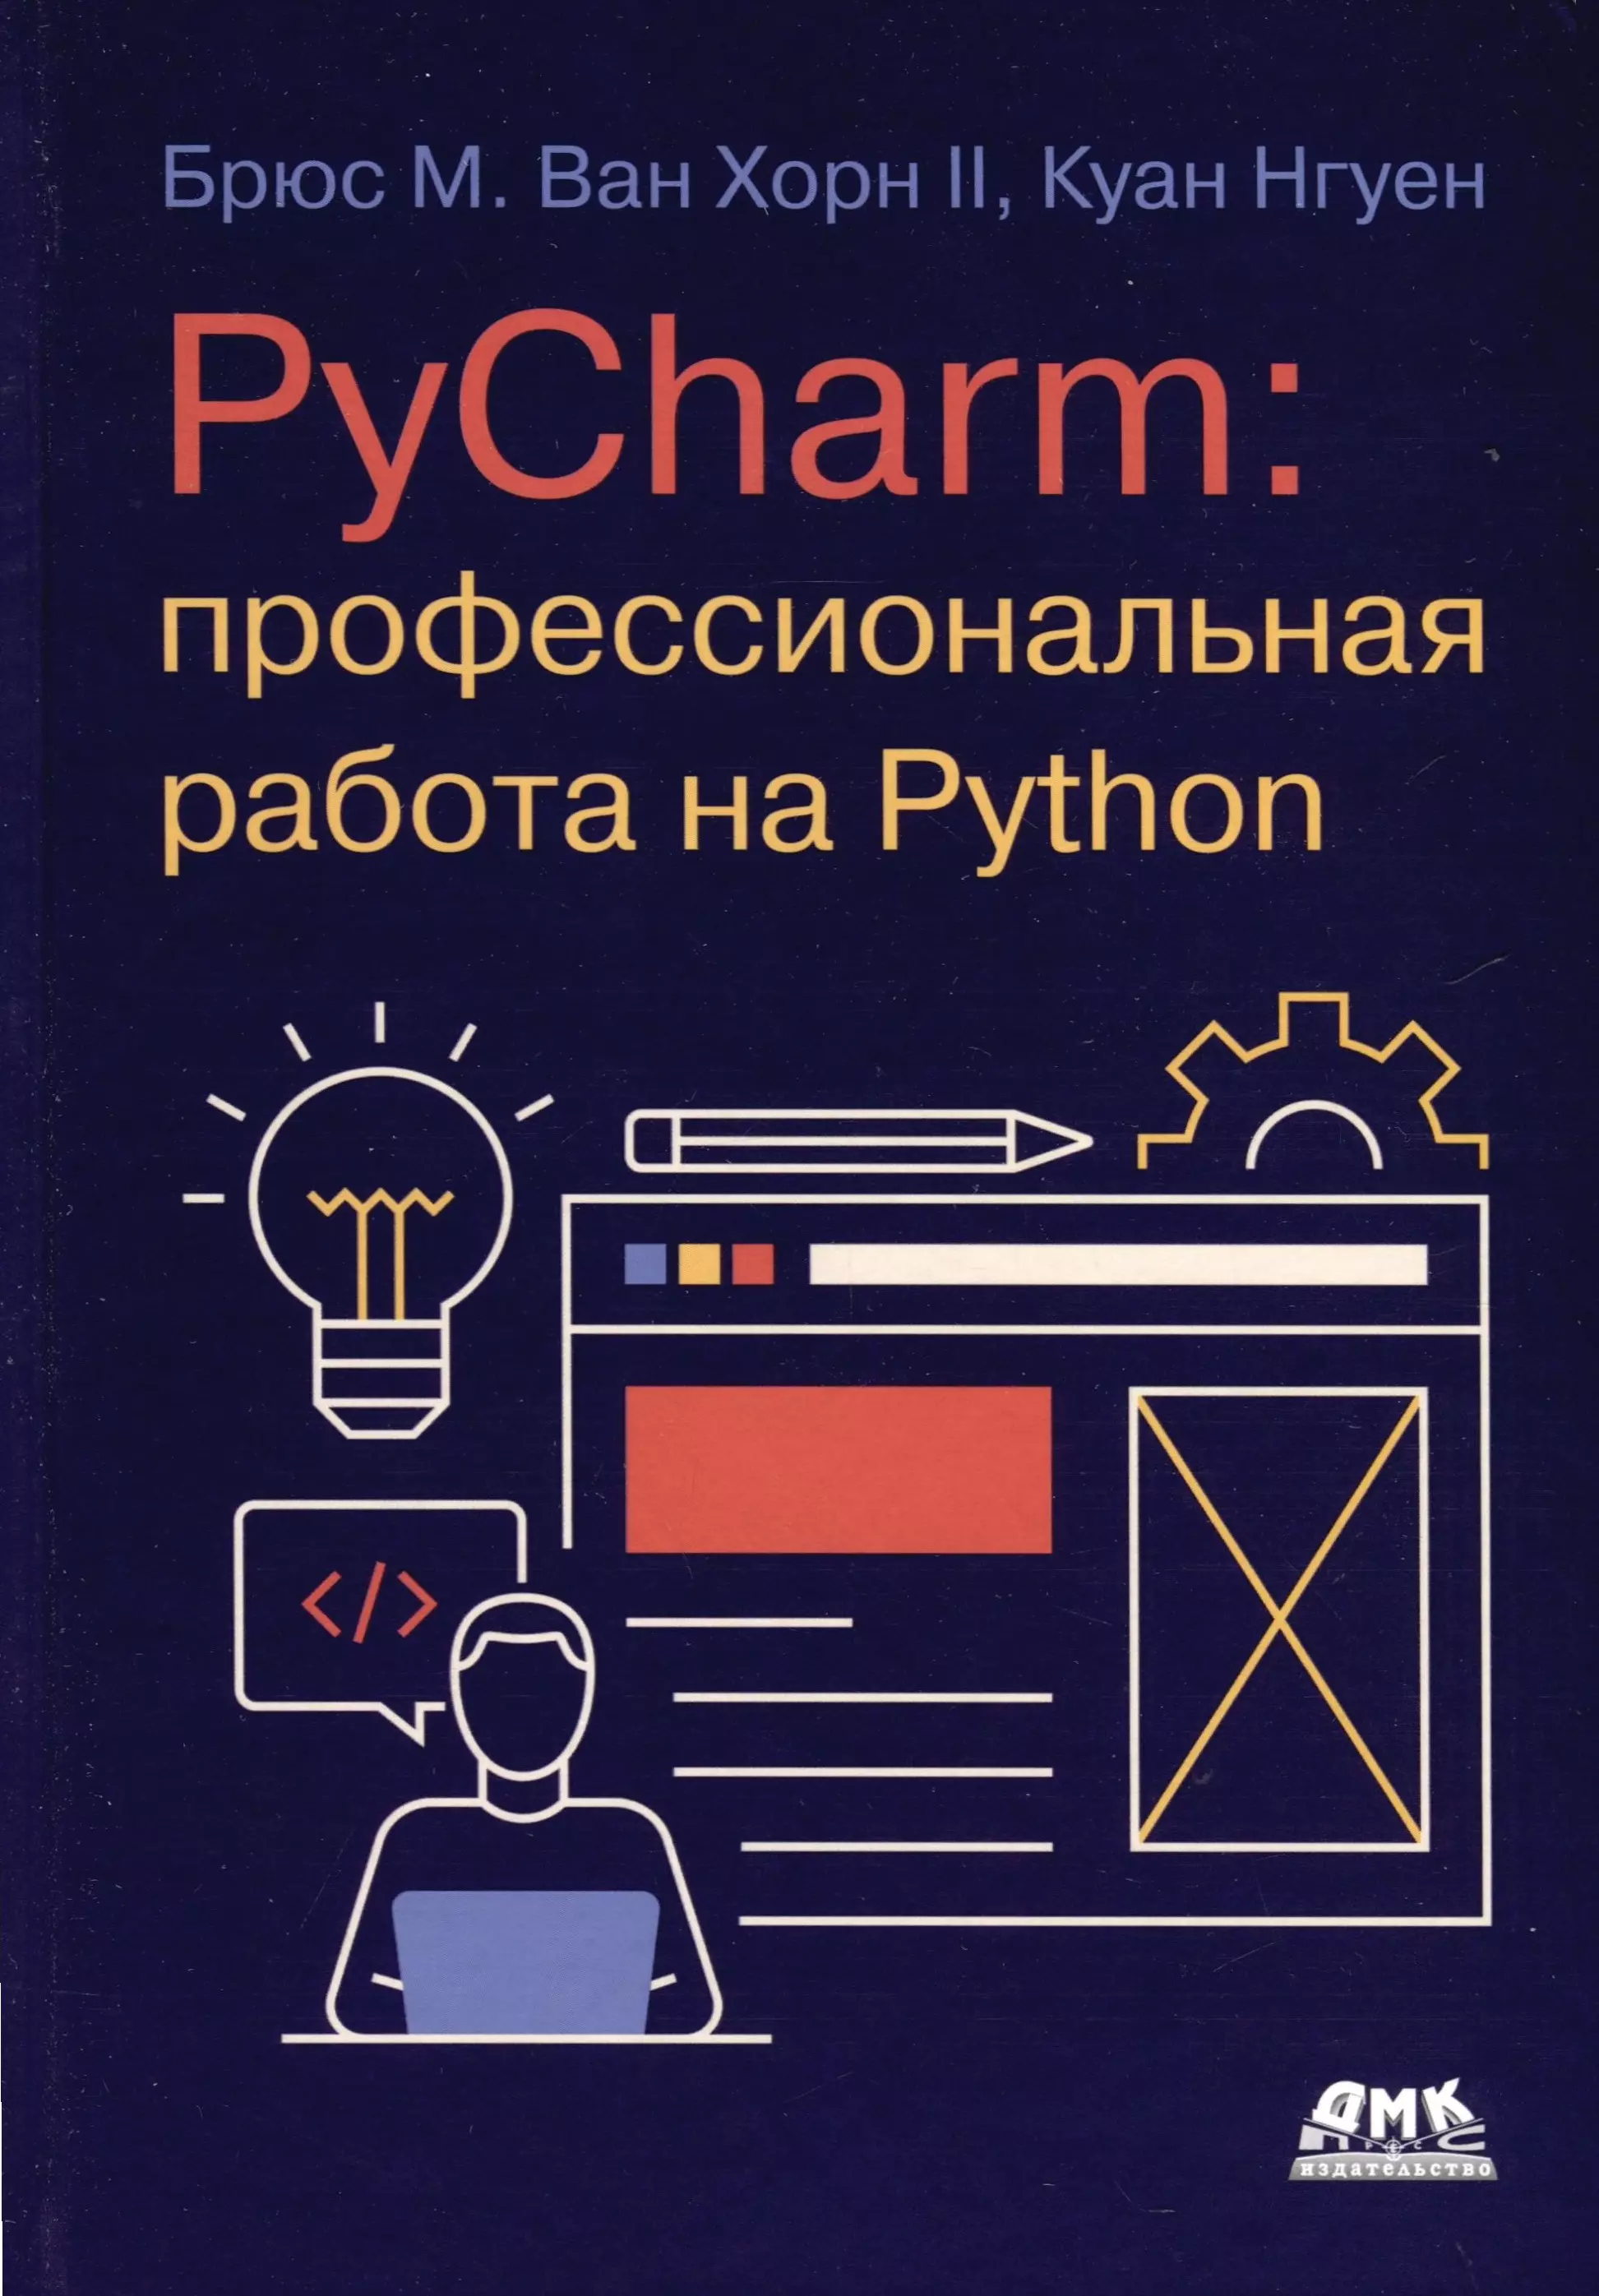 Нгуен Куан PYCHARM: профессиональная работа на PYTHON митчелл райан скрапинг веб сайтов с помощью python сбор данных из современного интернета